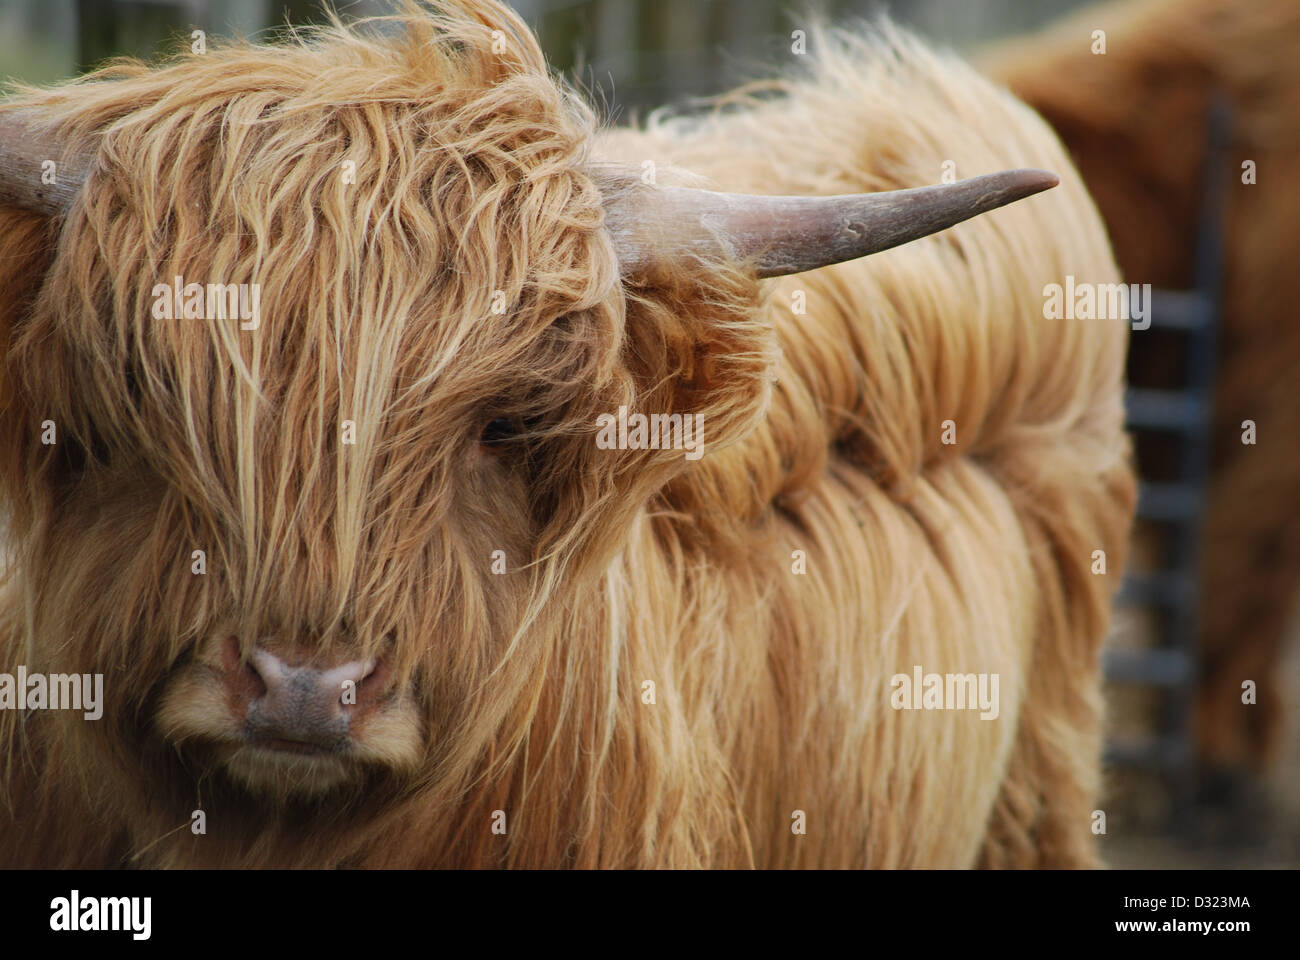 Nahaufnahme einer Highland Kuh mit orange und Ingwer Langhaar Fell in einem Streichelzoo oder Bauernhof mit Hörnern und Bokeh Hintergrund unscharf Stockfoto